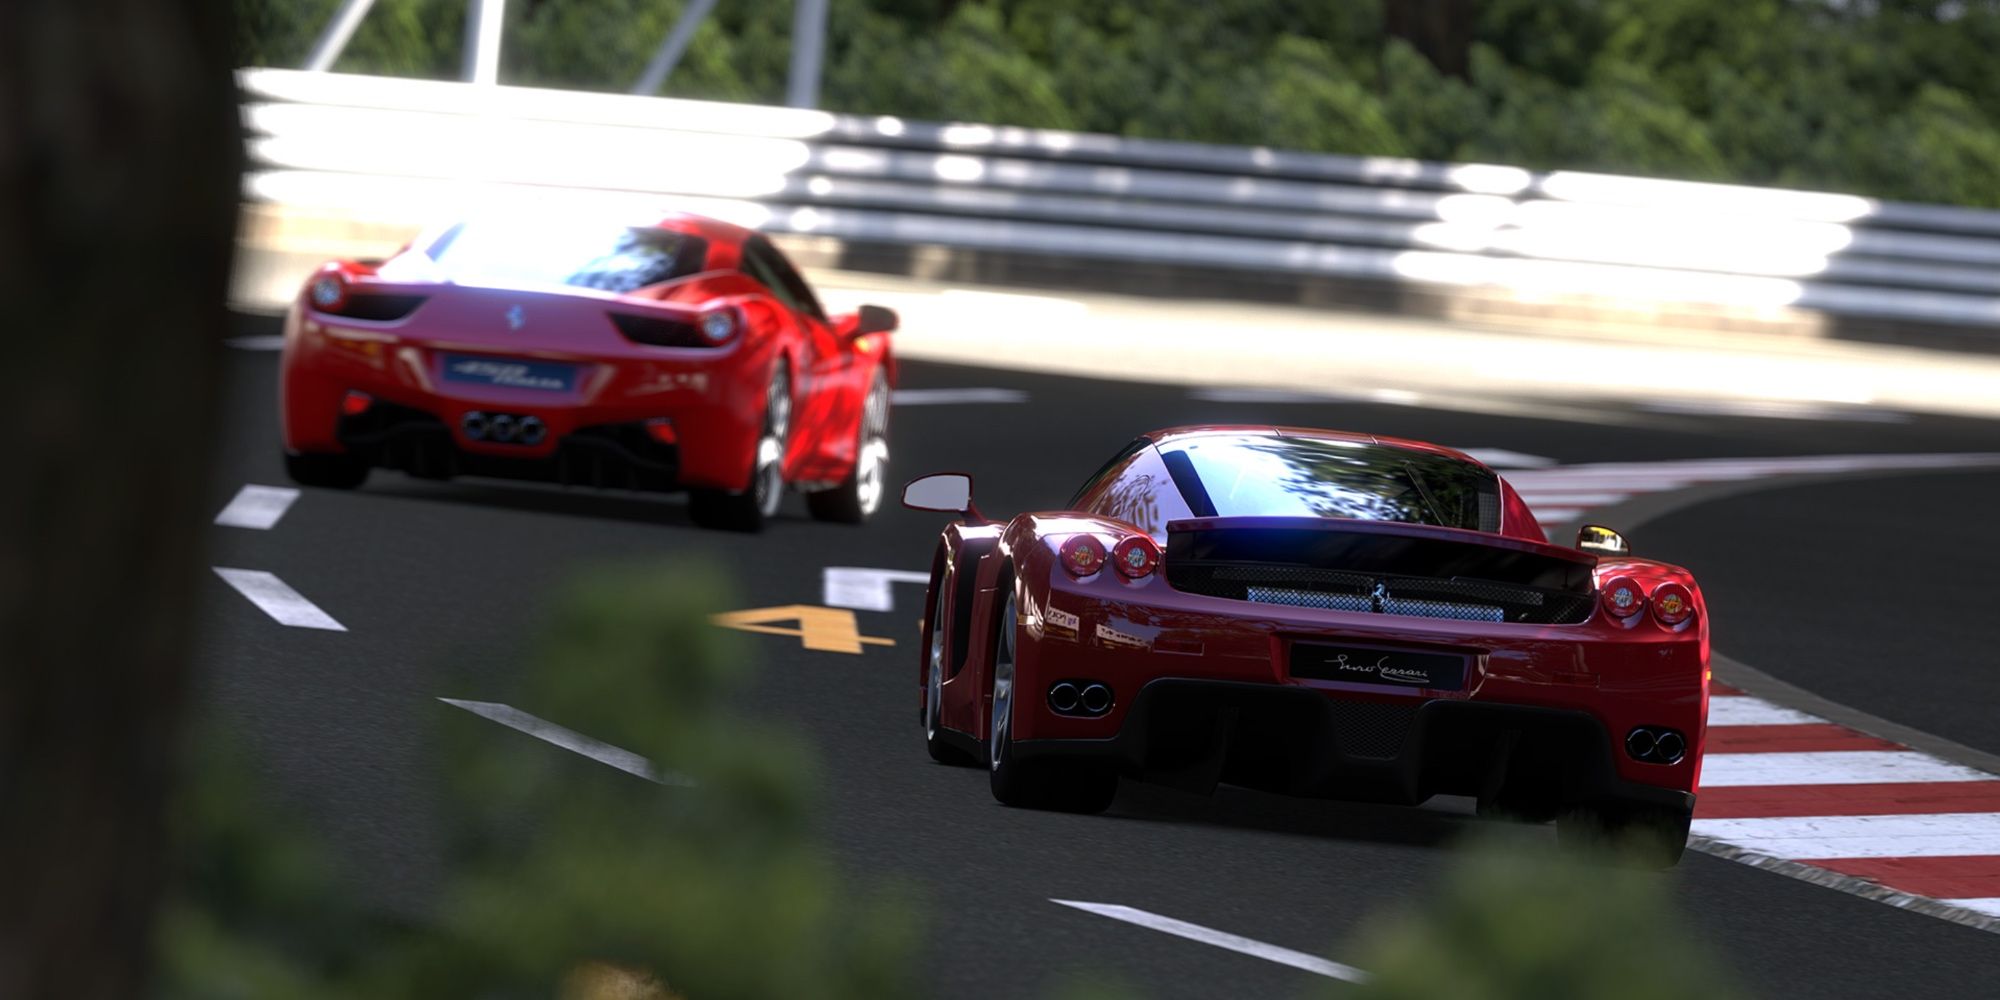 Image showing Gran Turismo 5